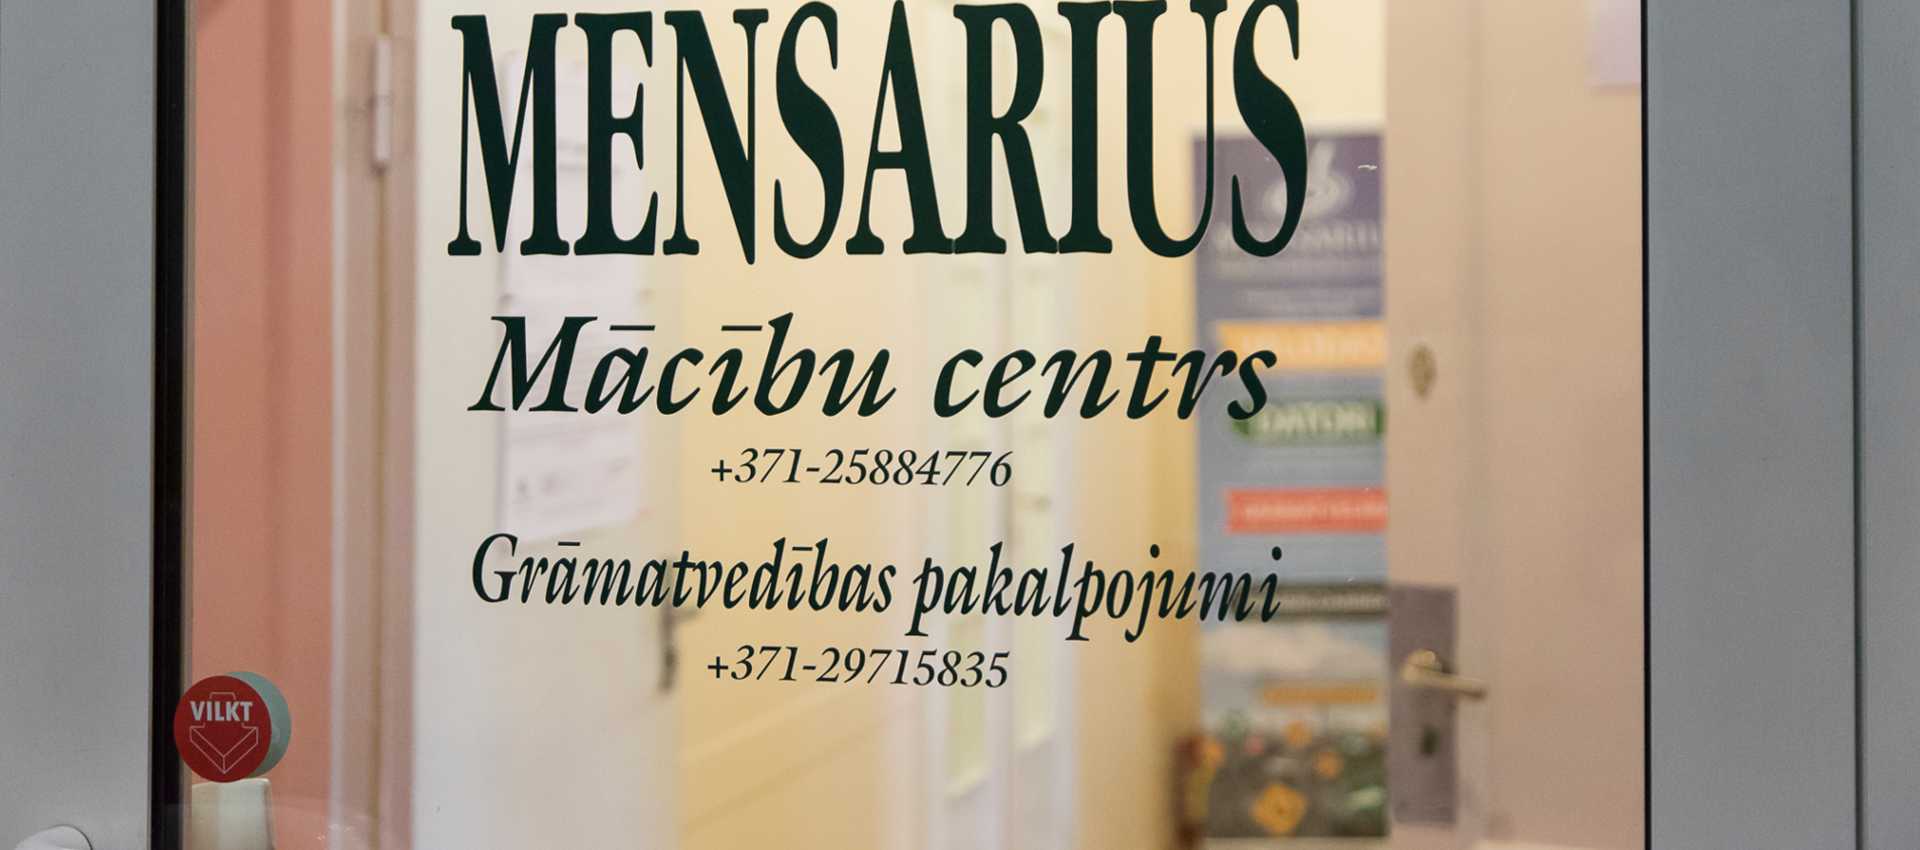 MENSARIUS